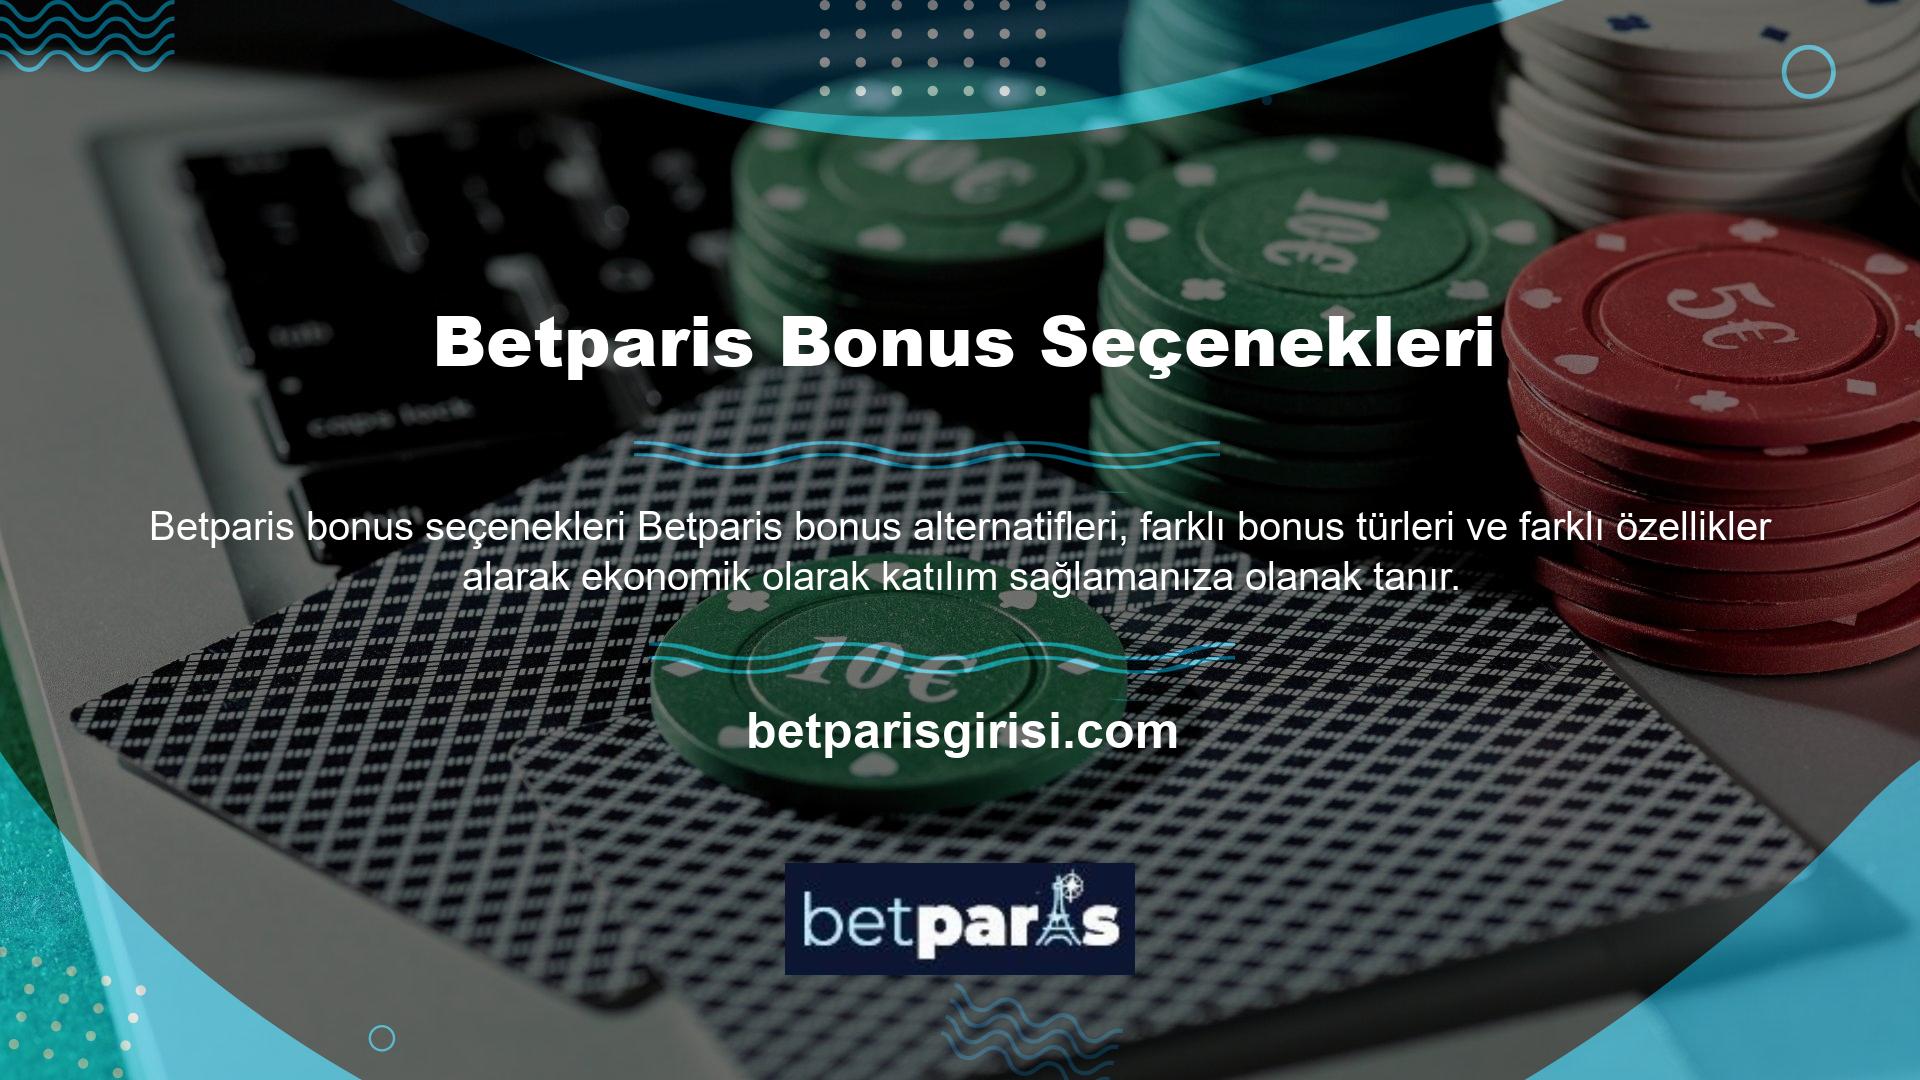 Betparis online casino ve casino web sitesi yasal olarak faaliyet gösteren birkaç web sitesinden biridir